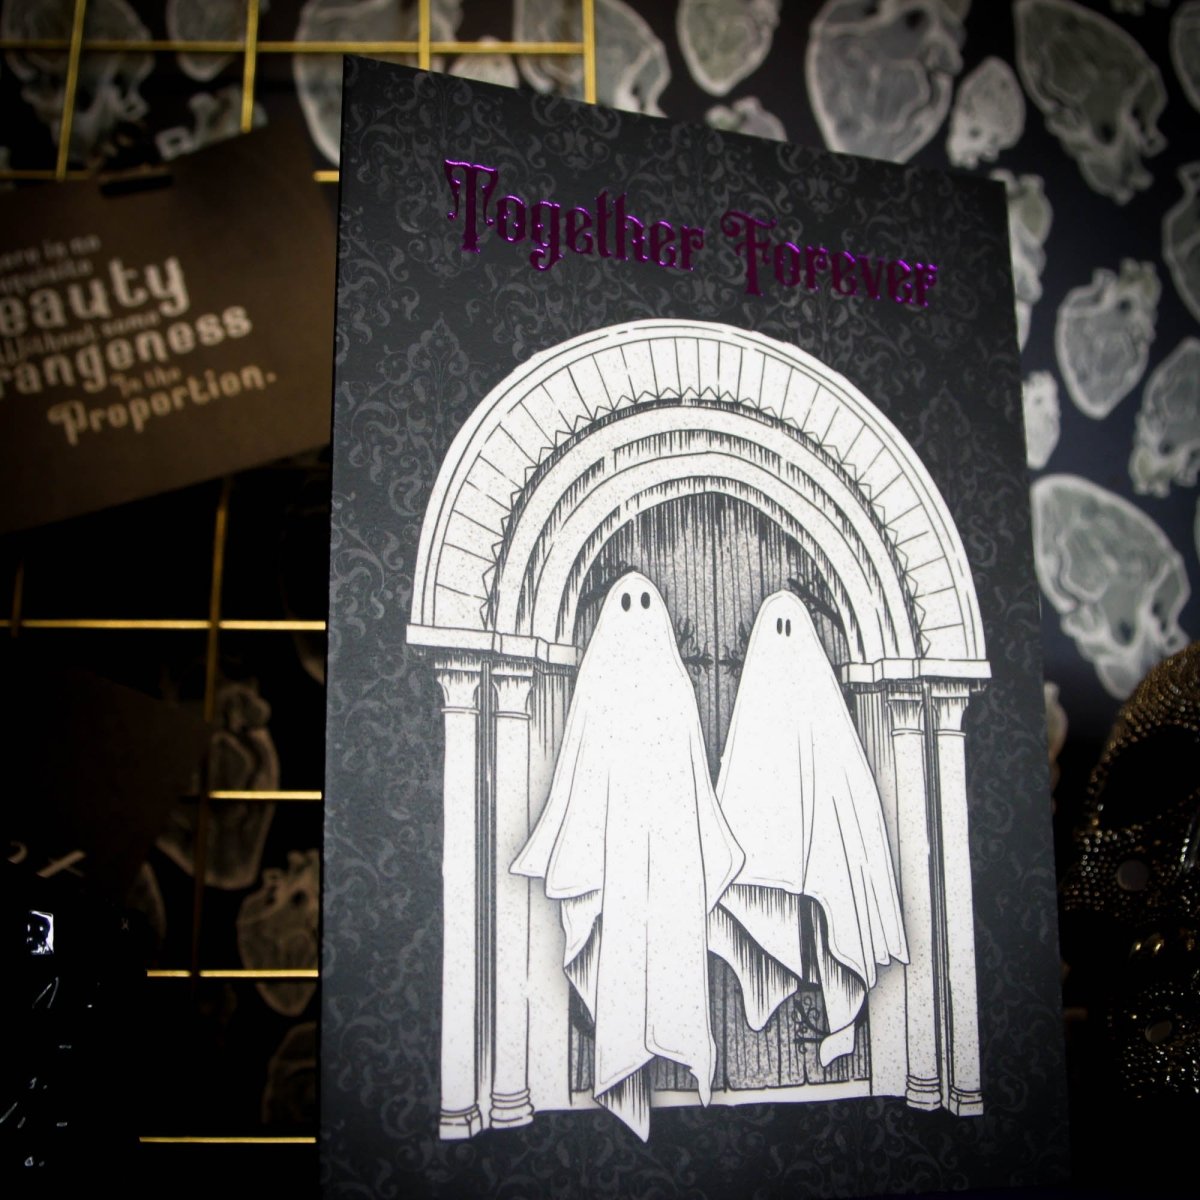 Tarjeta de felicitación Together Forever Ghost - Aniversario de boda gótico